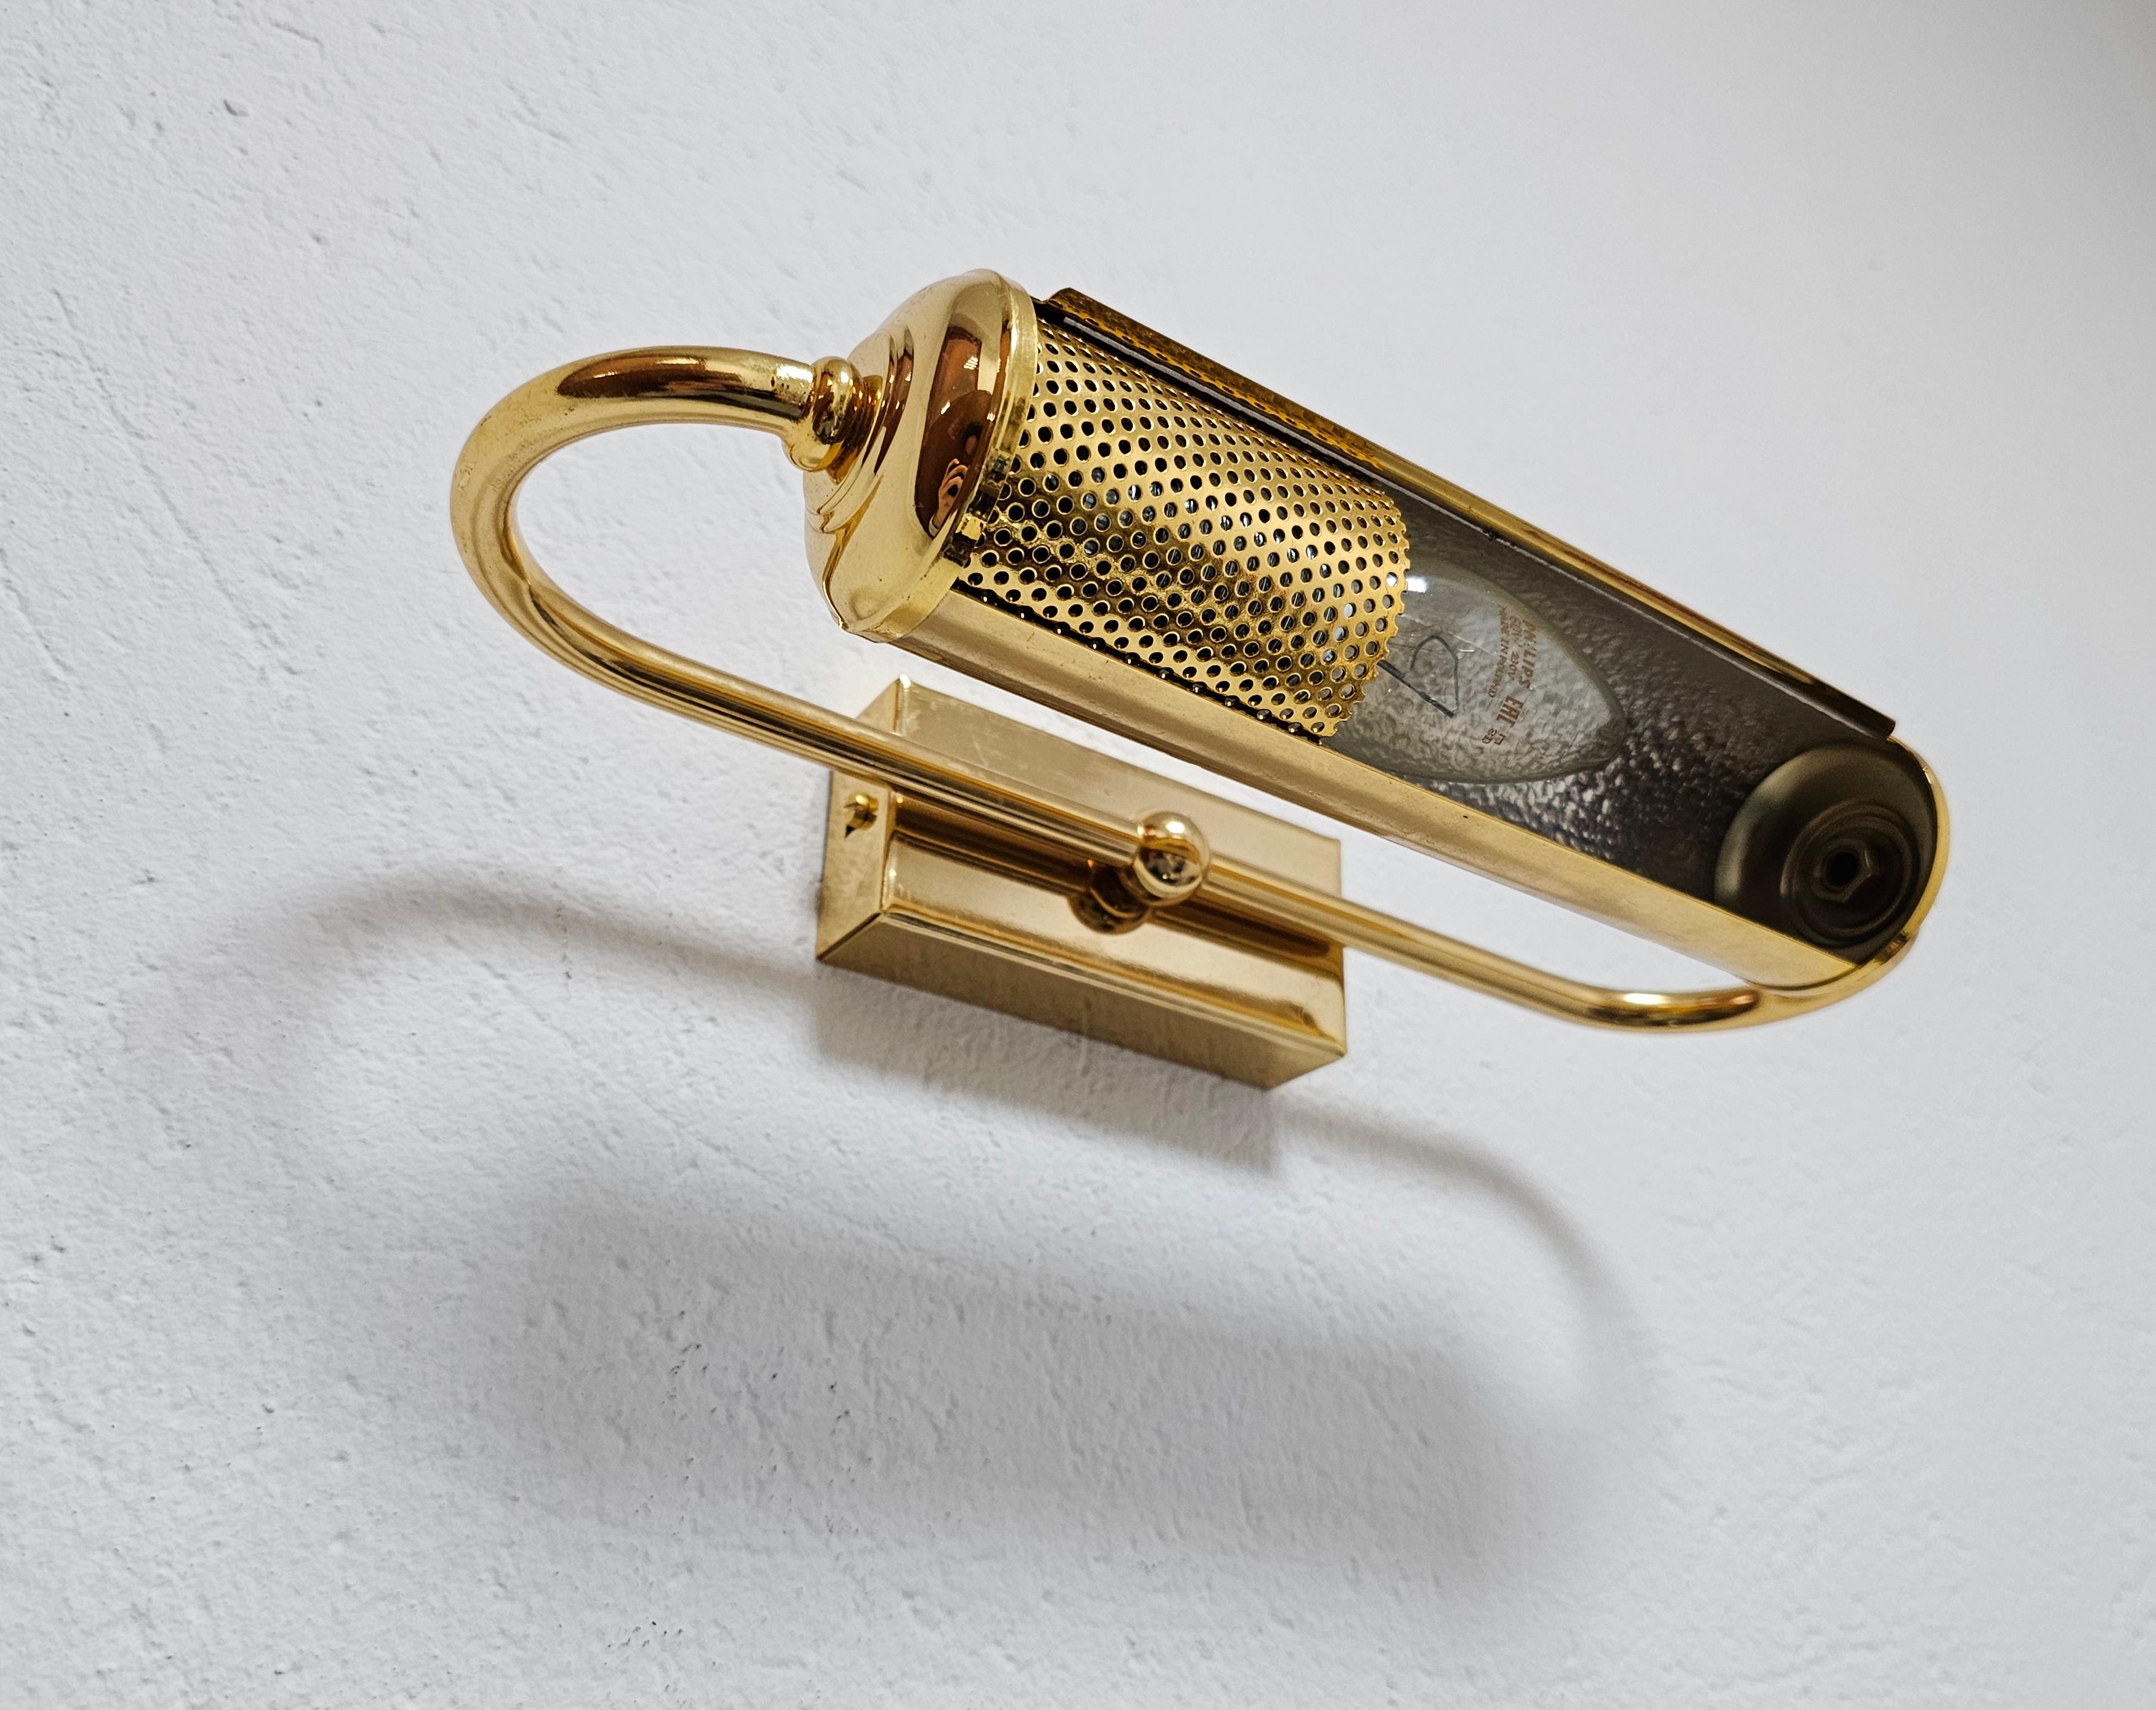 In dieser Auflistung finden Sie elegante Mid Century Modern Gold Plated Sconces oder Picture Lights. Sie bestehen aus zylindrischen Röhren, die sich um 360 Grad drehen, und einem einzigen Licht. Hergestellt in Westdeutschland in den 1970er Jahren.